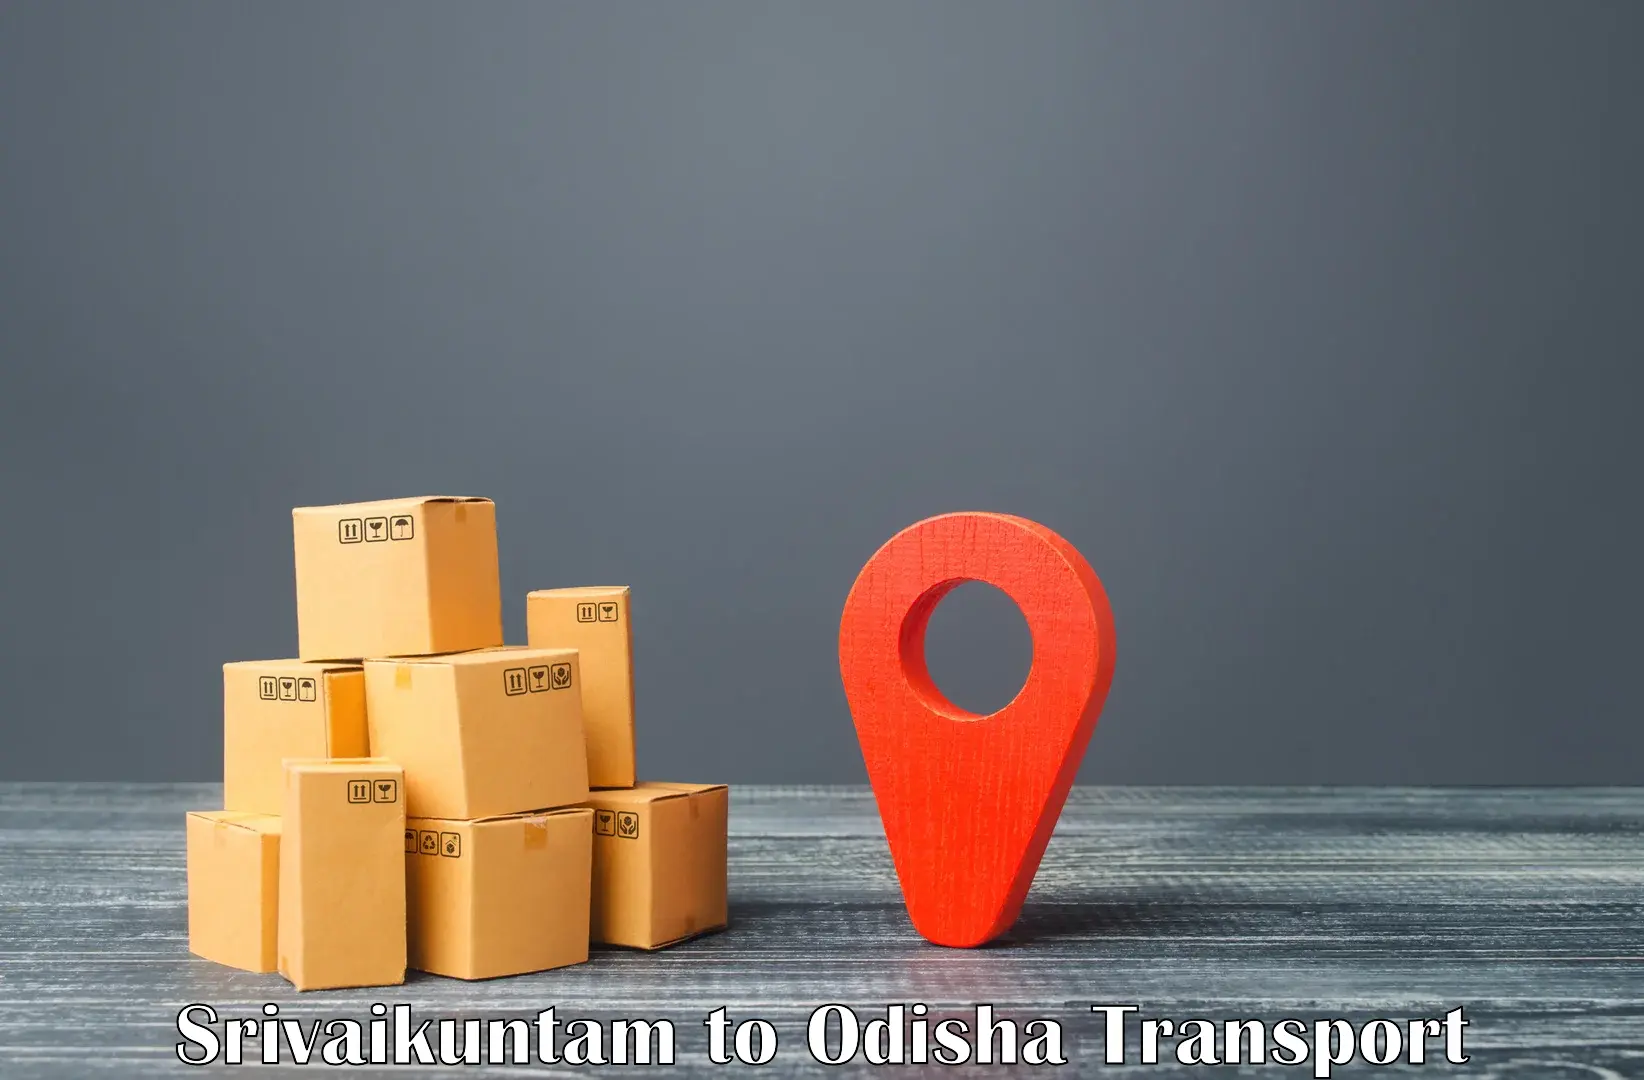 Bike transport service Srivaikuntam to Odisha